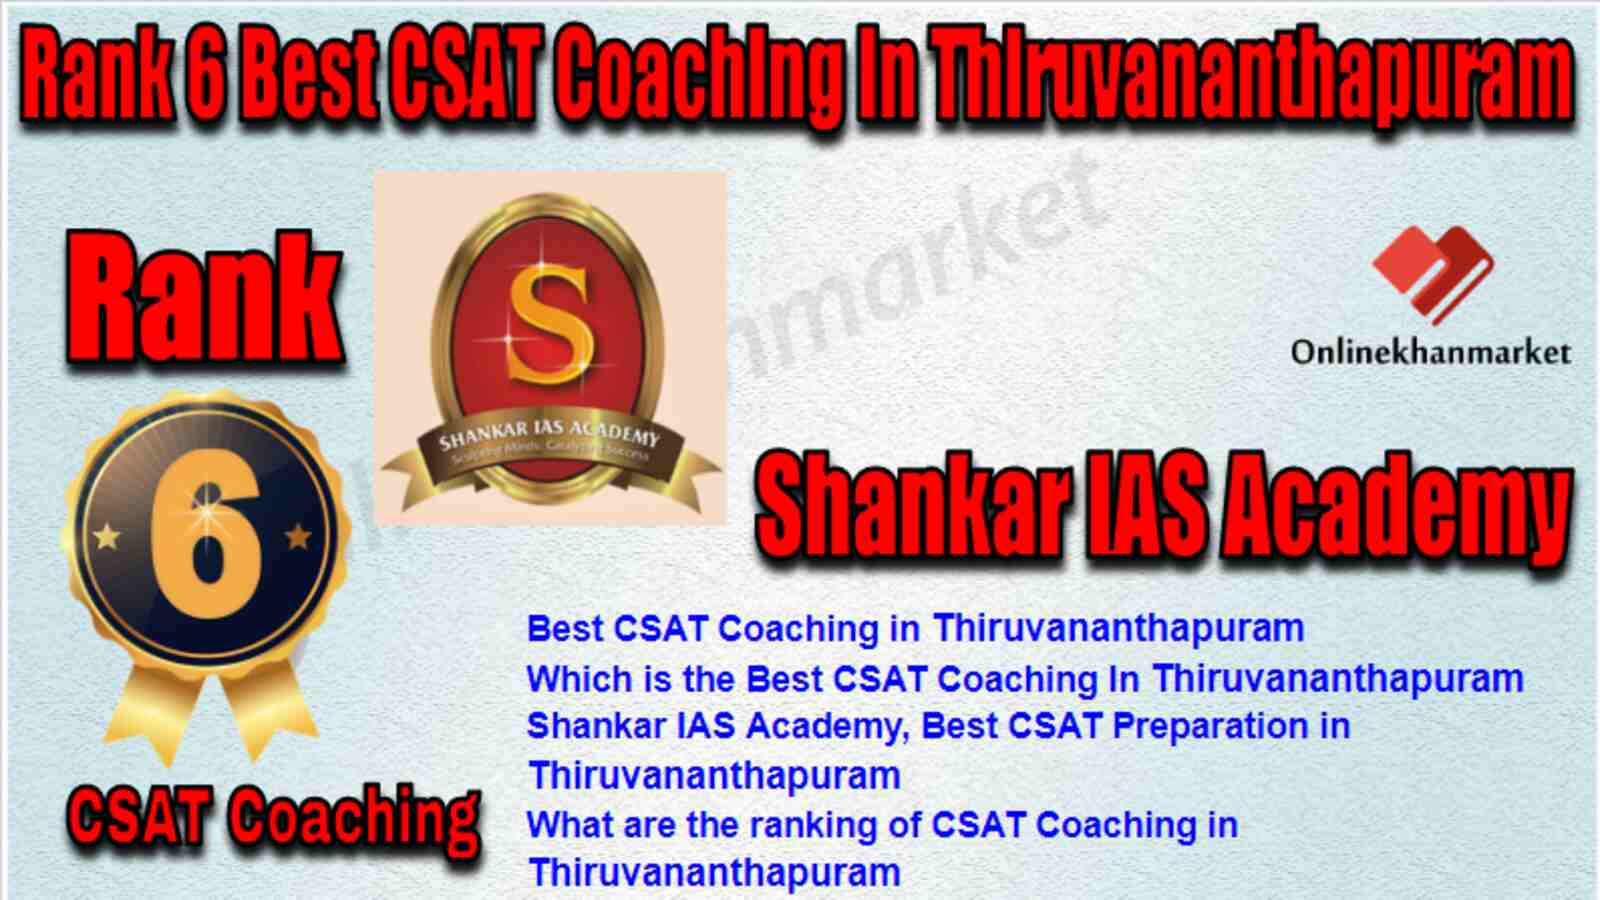 Rank 6 Best CSAT Coaching in Thiruvananthapuram